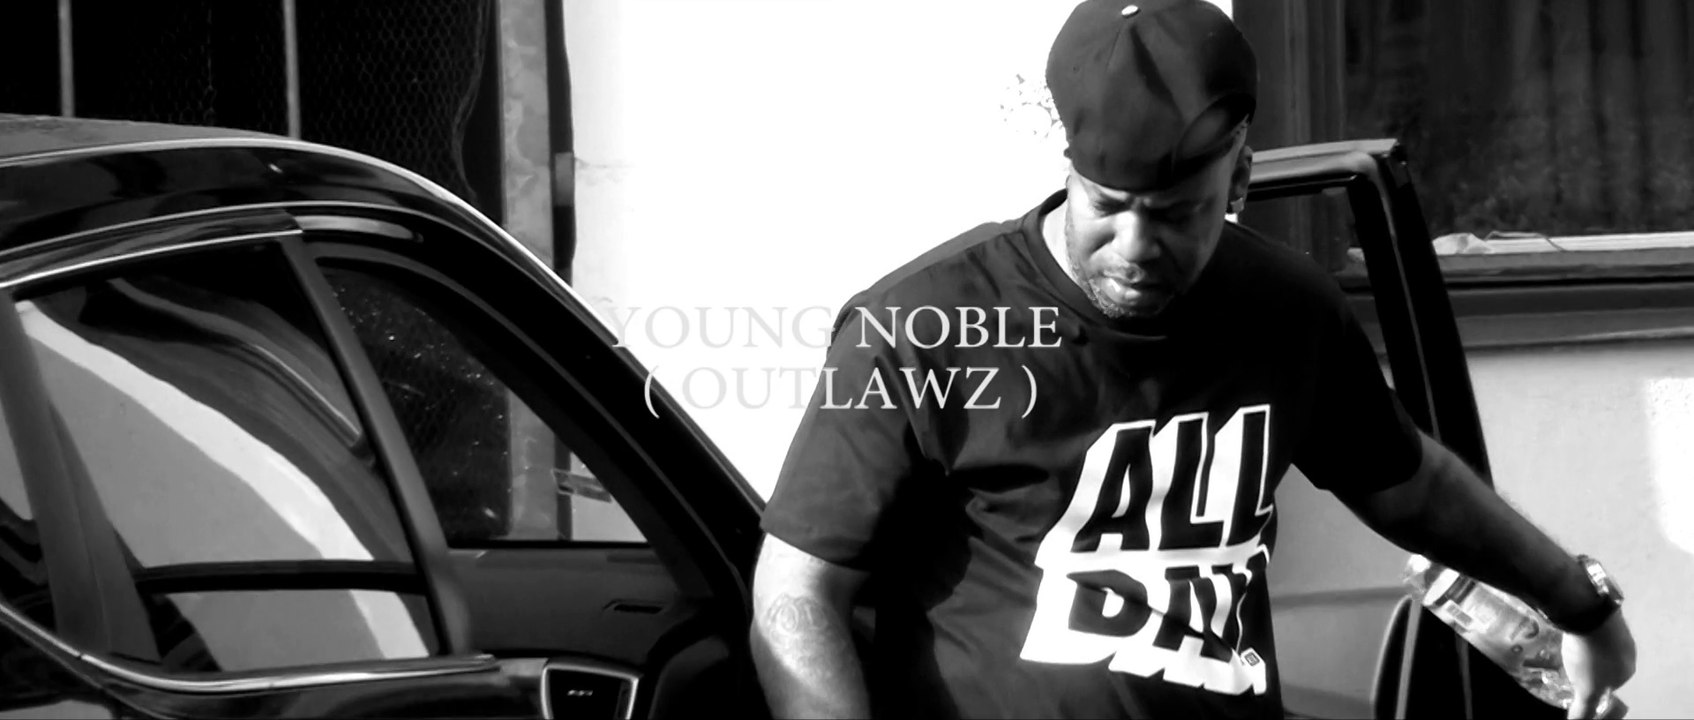 Lex Davinci - Young Noble (Outlawz / Tupac Shakur) - Shoutout